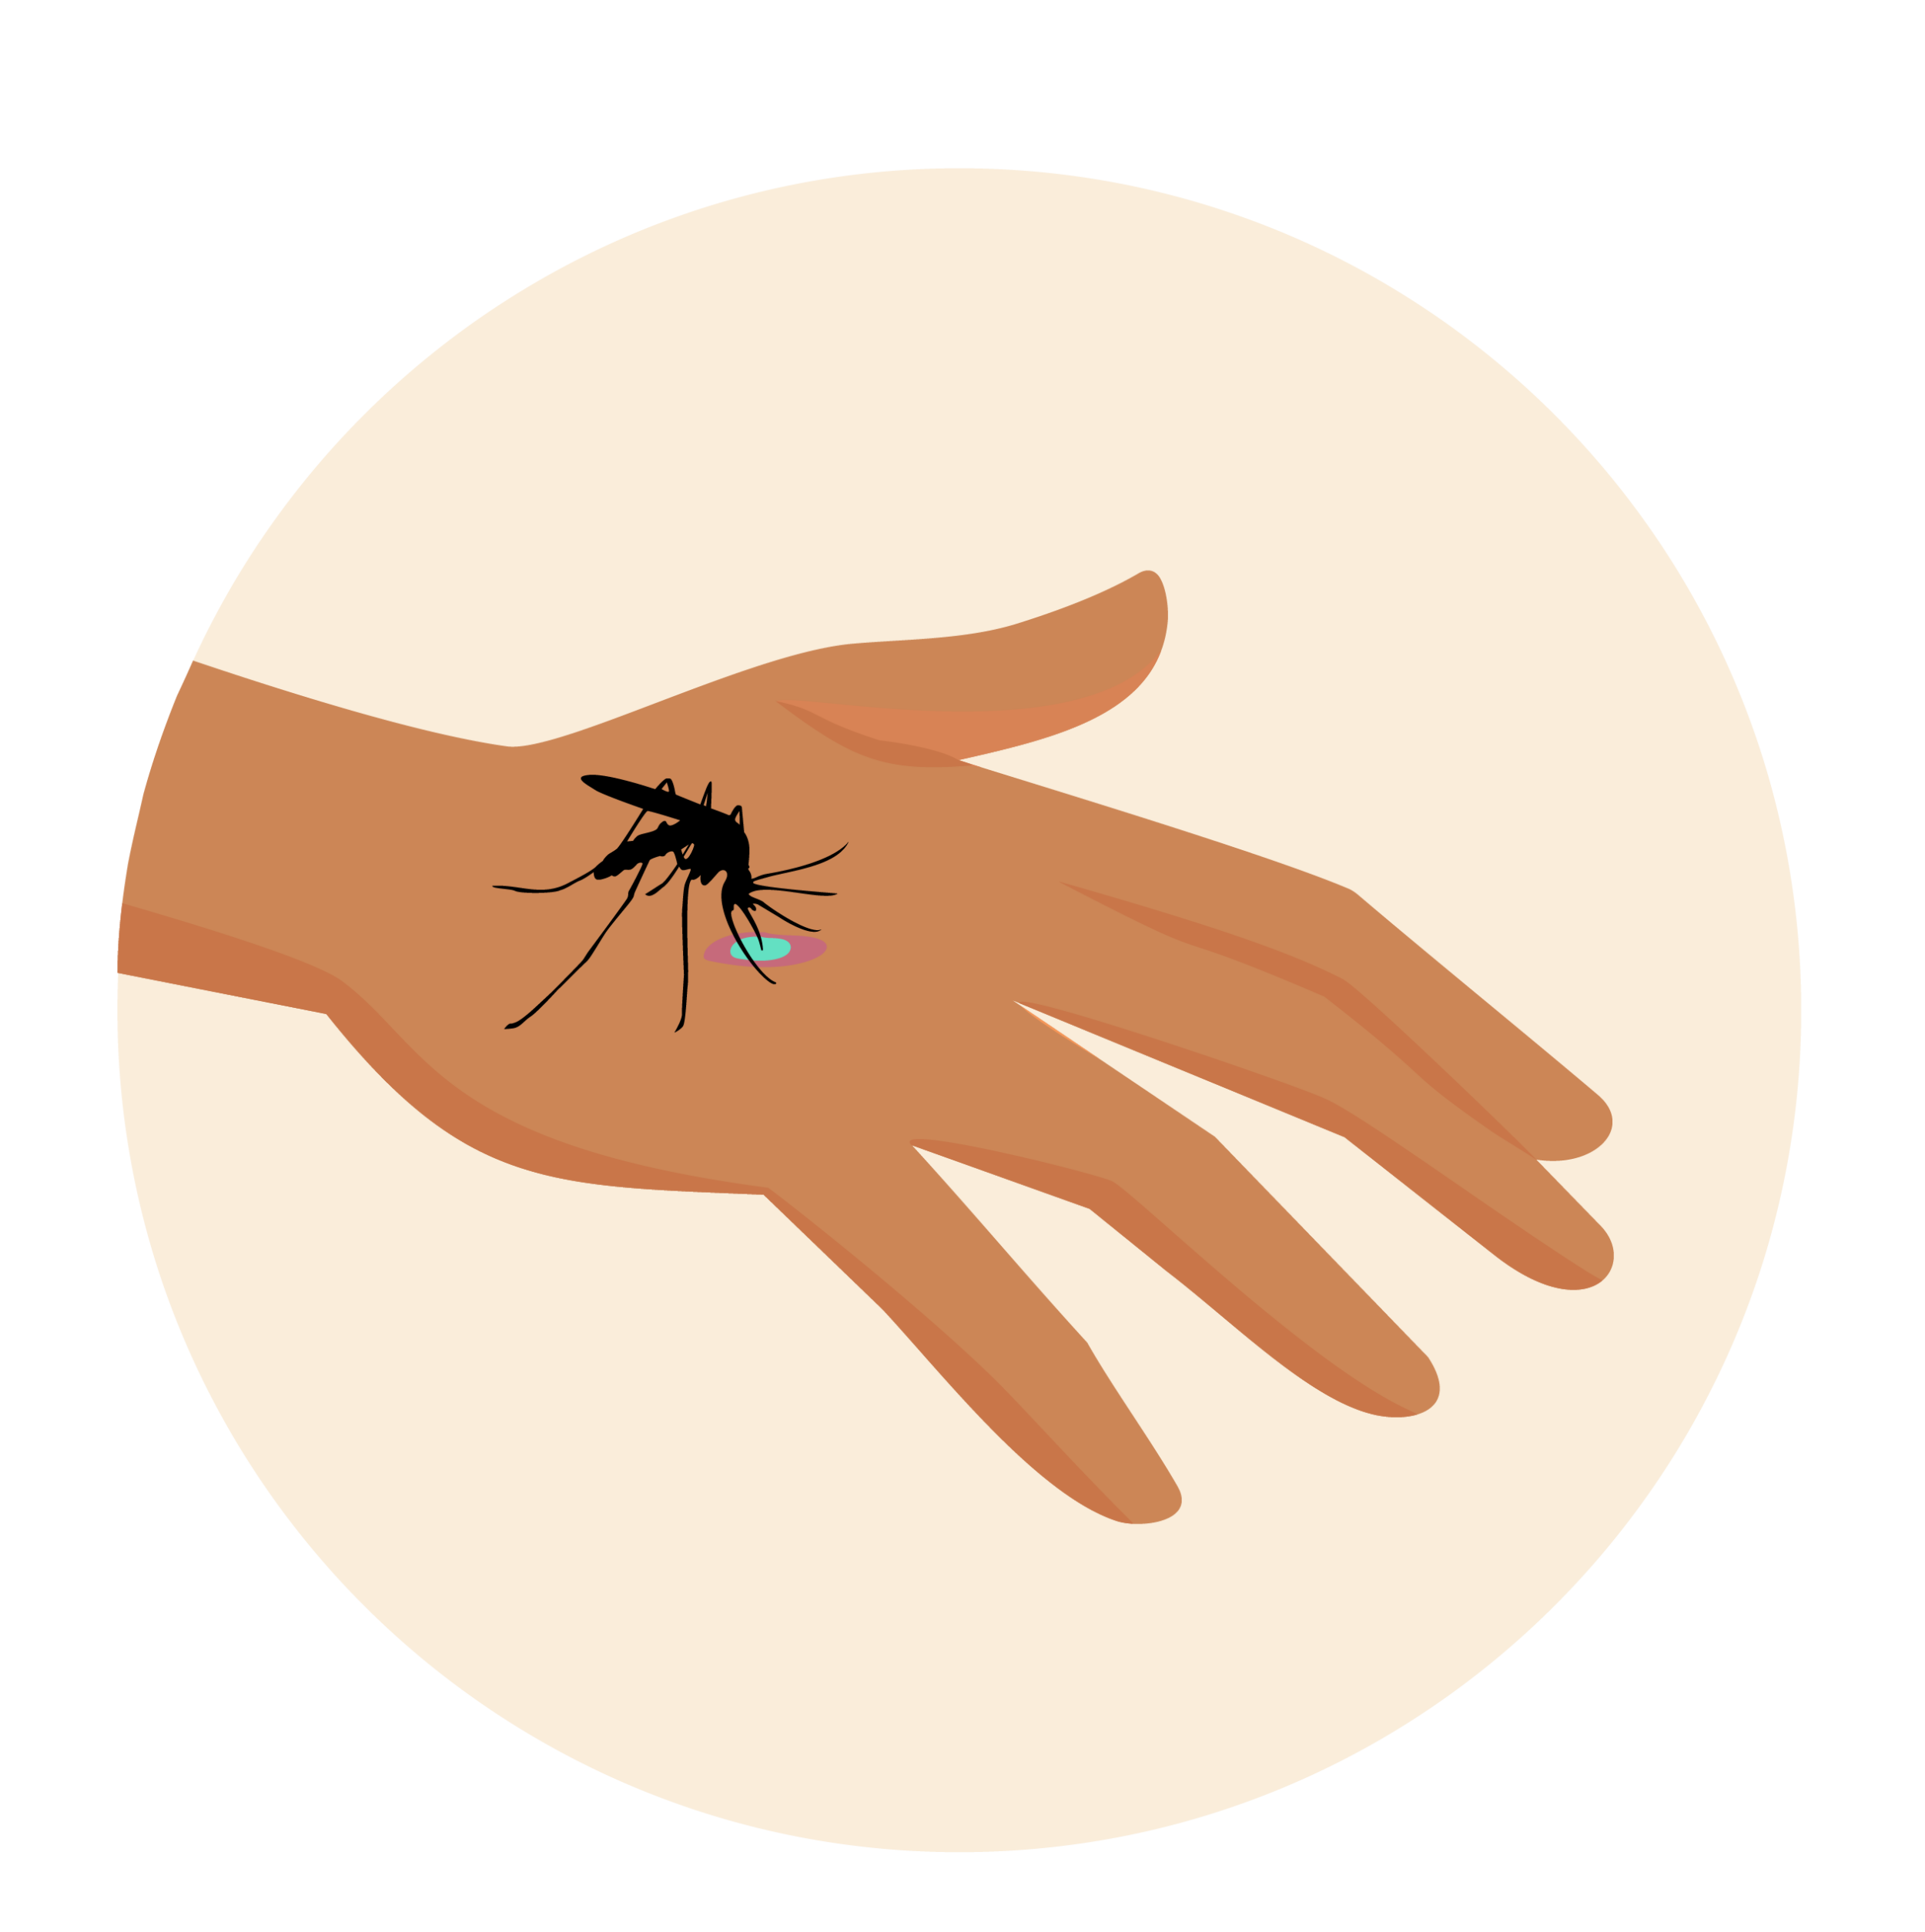 Niezainfekowany komar gryzący dłoń krwią zakażoną malarią. 